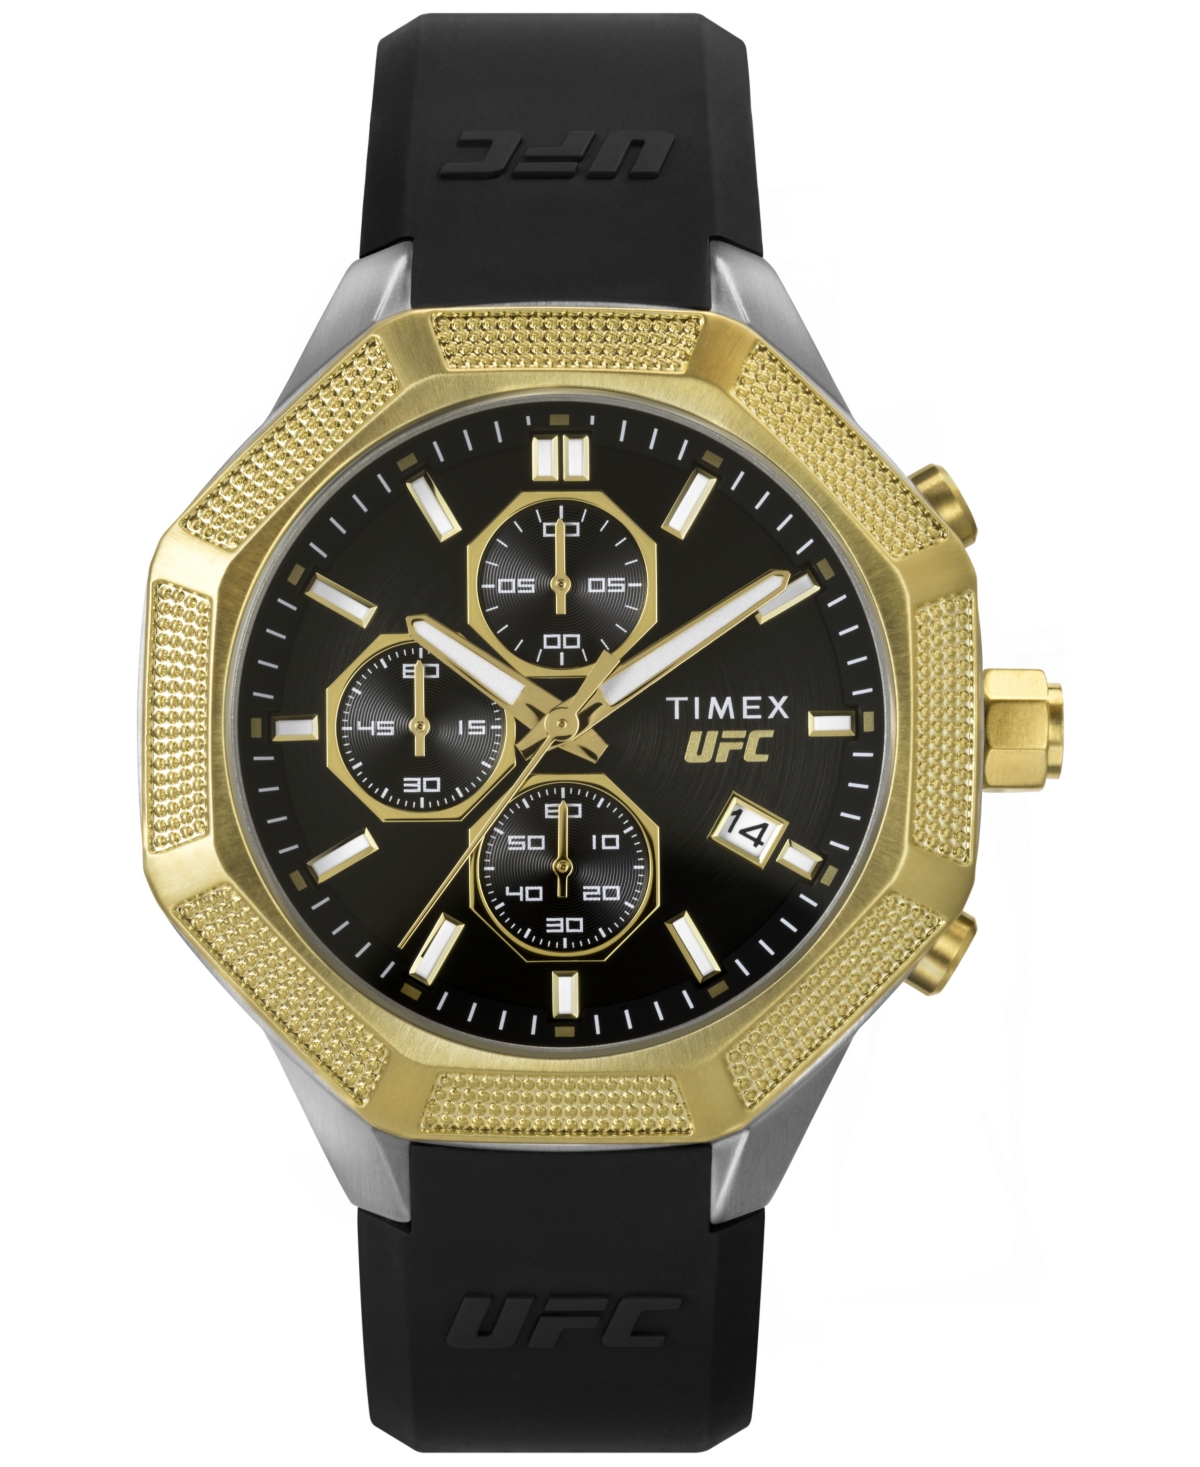 Ufc Men's King Analog Black Silicone Watch, 45mm - Black